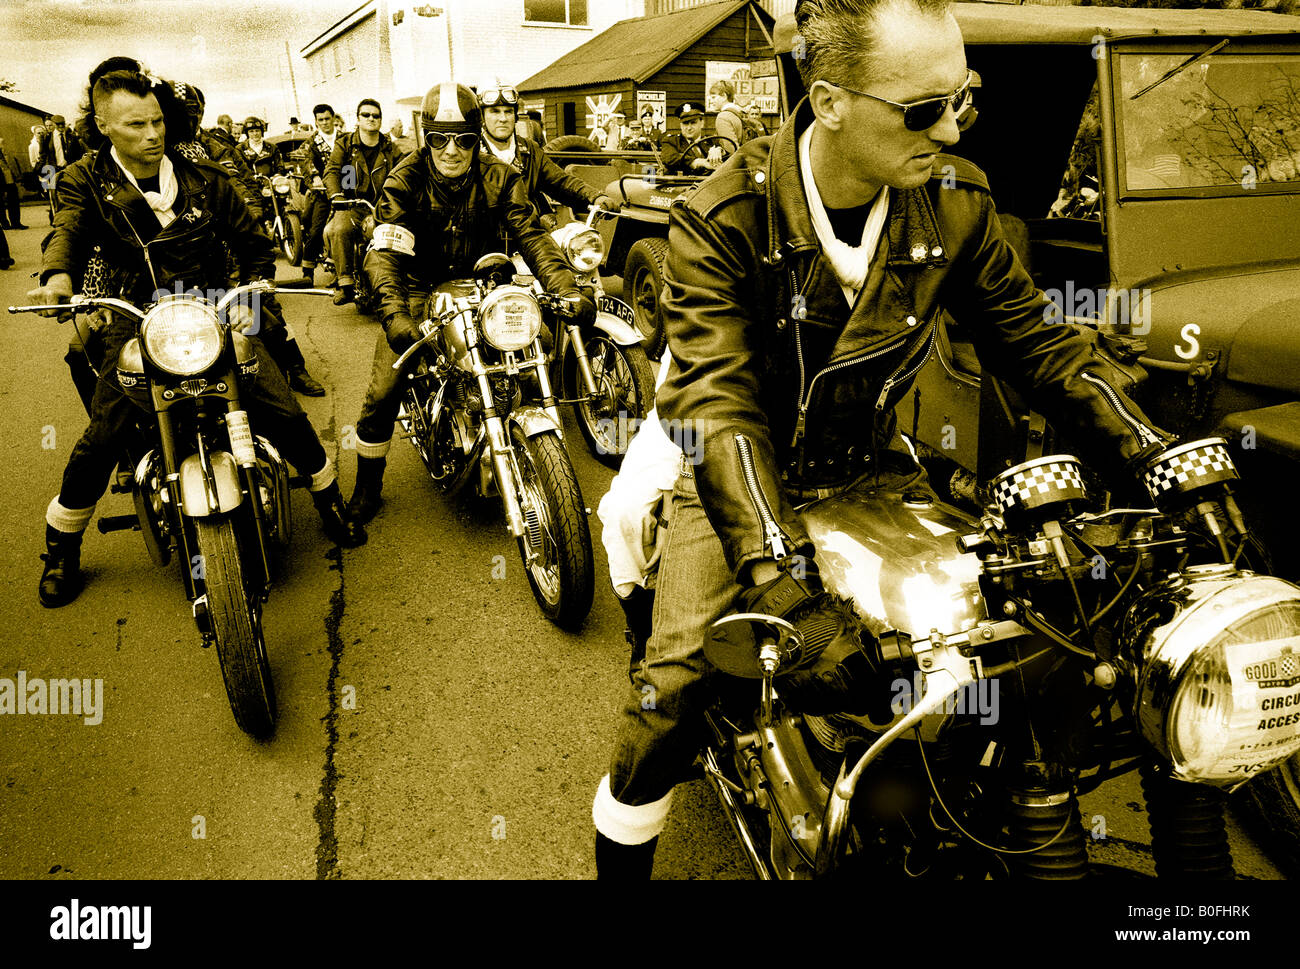 Greaser anni cinquanta rockers pista su British classic BSA Norton motocicli a Goodwood Foto Stock